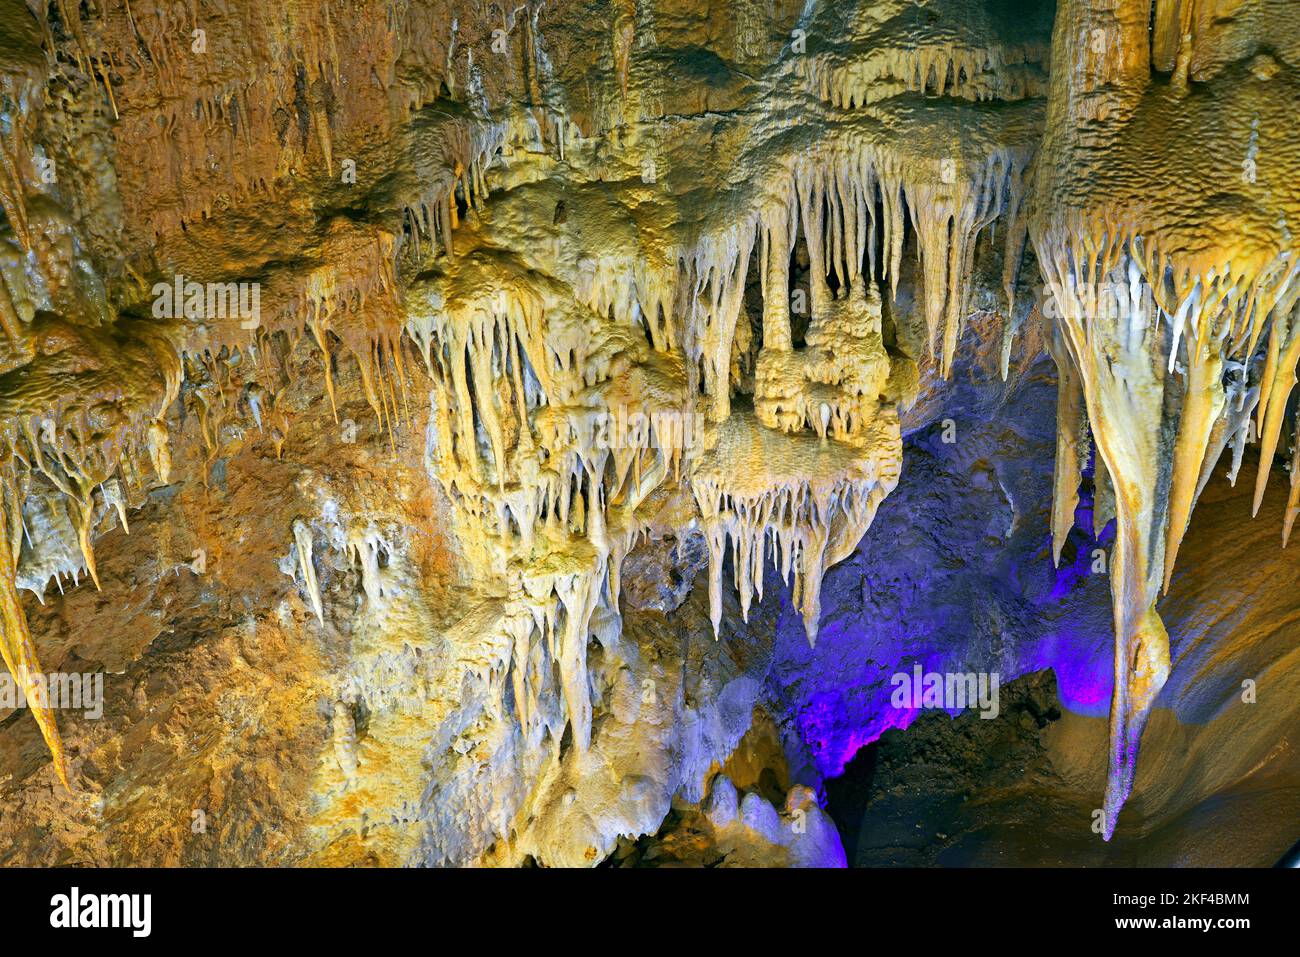 Tropfsteinhöhle in Frankreich, Südfrankreich, Alpes-Maritimes Stock Photo